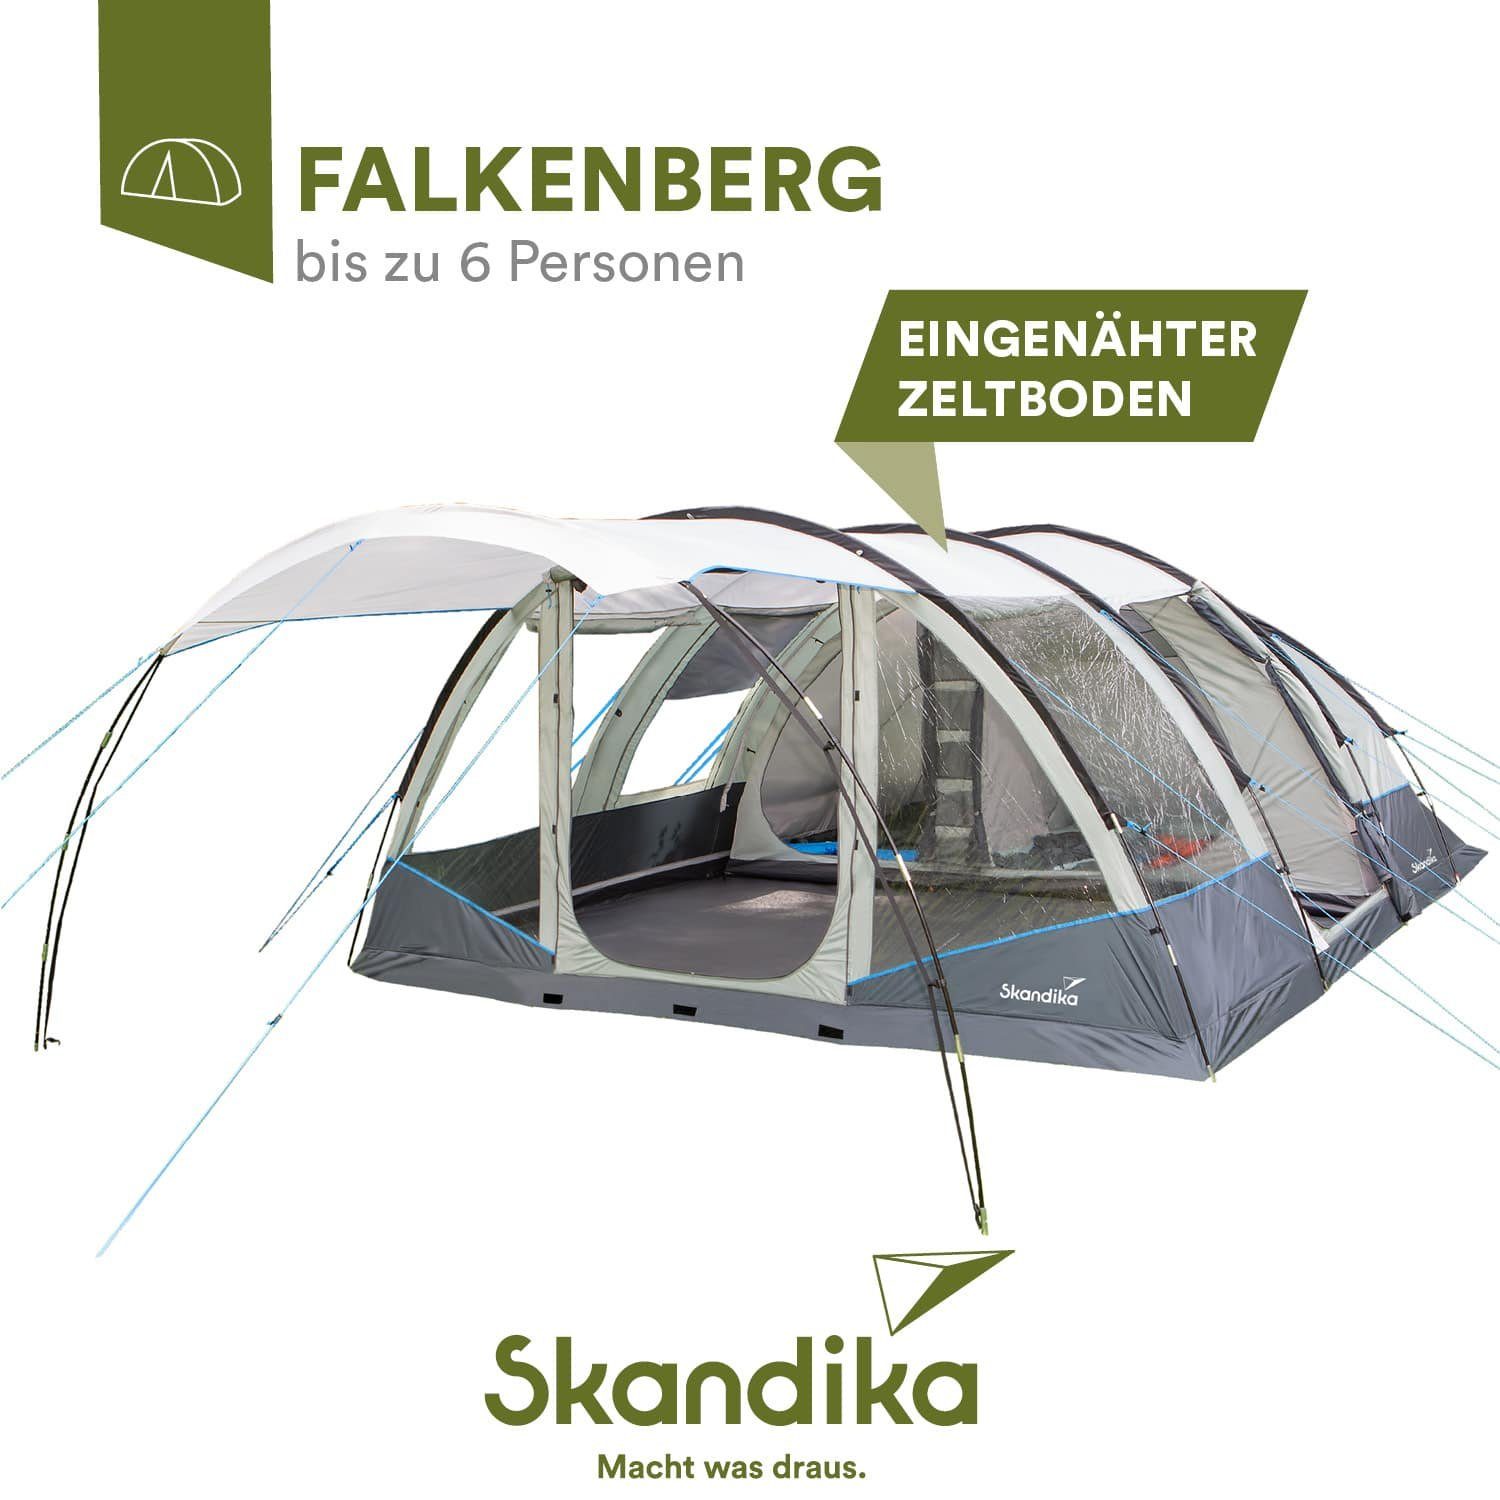 Skandika Tunnelzelt Falkenberg 6 (grau/blau), Großes Familienzelt,  eingenähter Zeltboden, 2 m Stehhöhe, wasserdicht, 4.000 mm Wassersäule,  Moskitonetze, teilbare Schlafkabine, Outdoor Camping Zelt